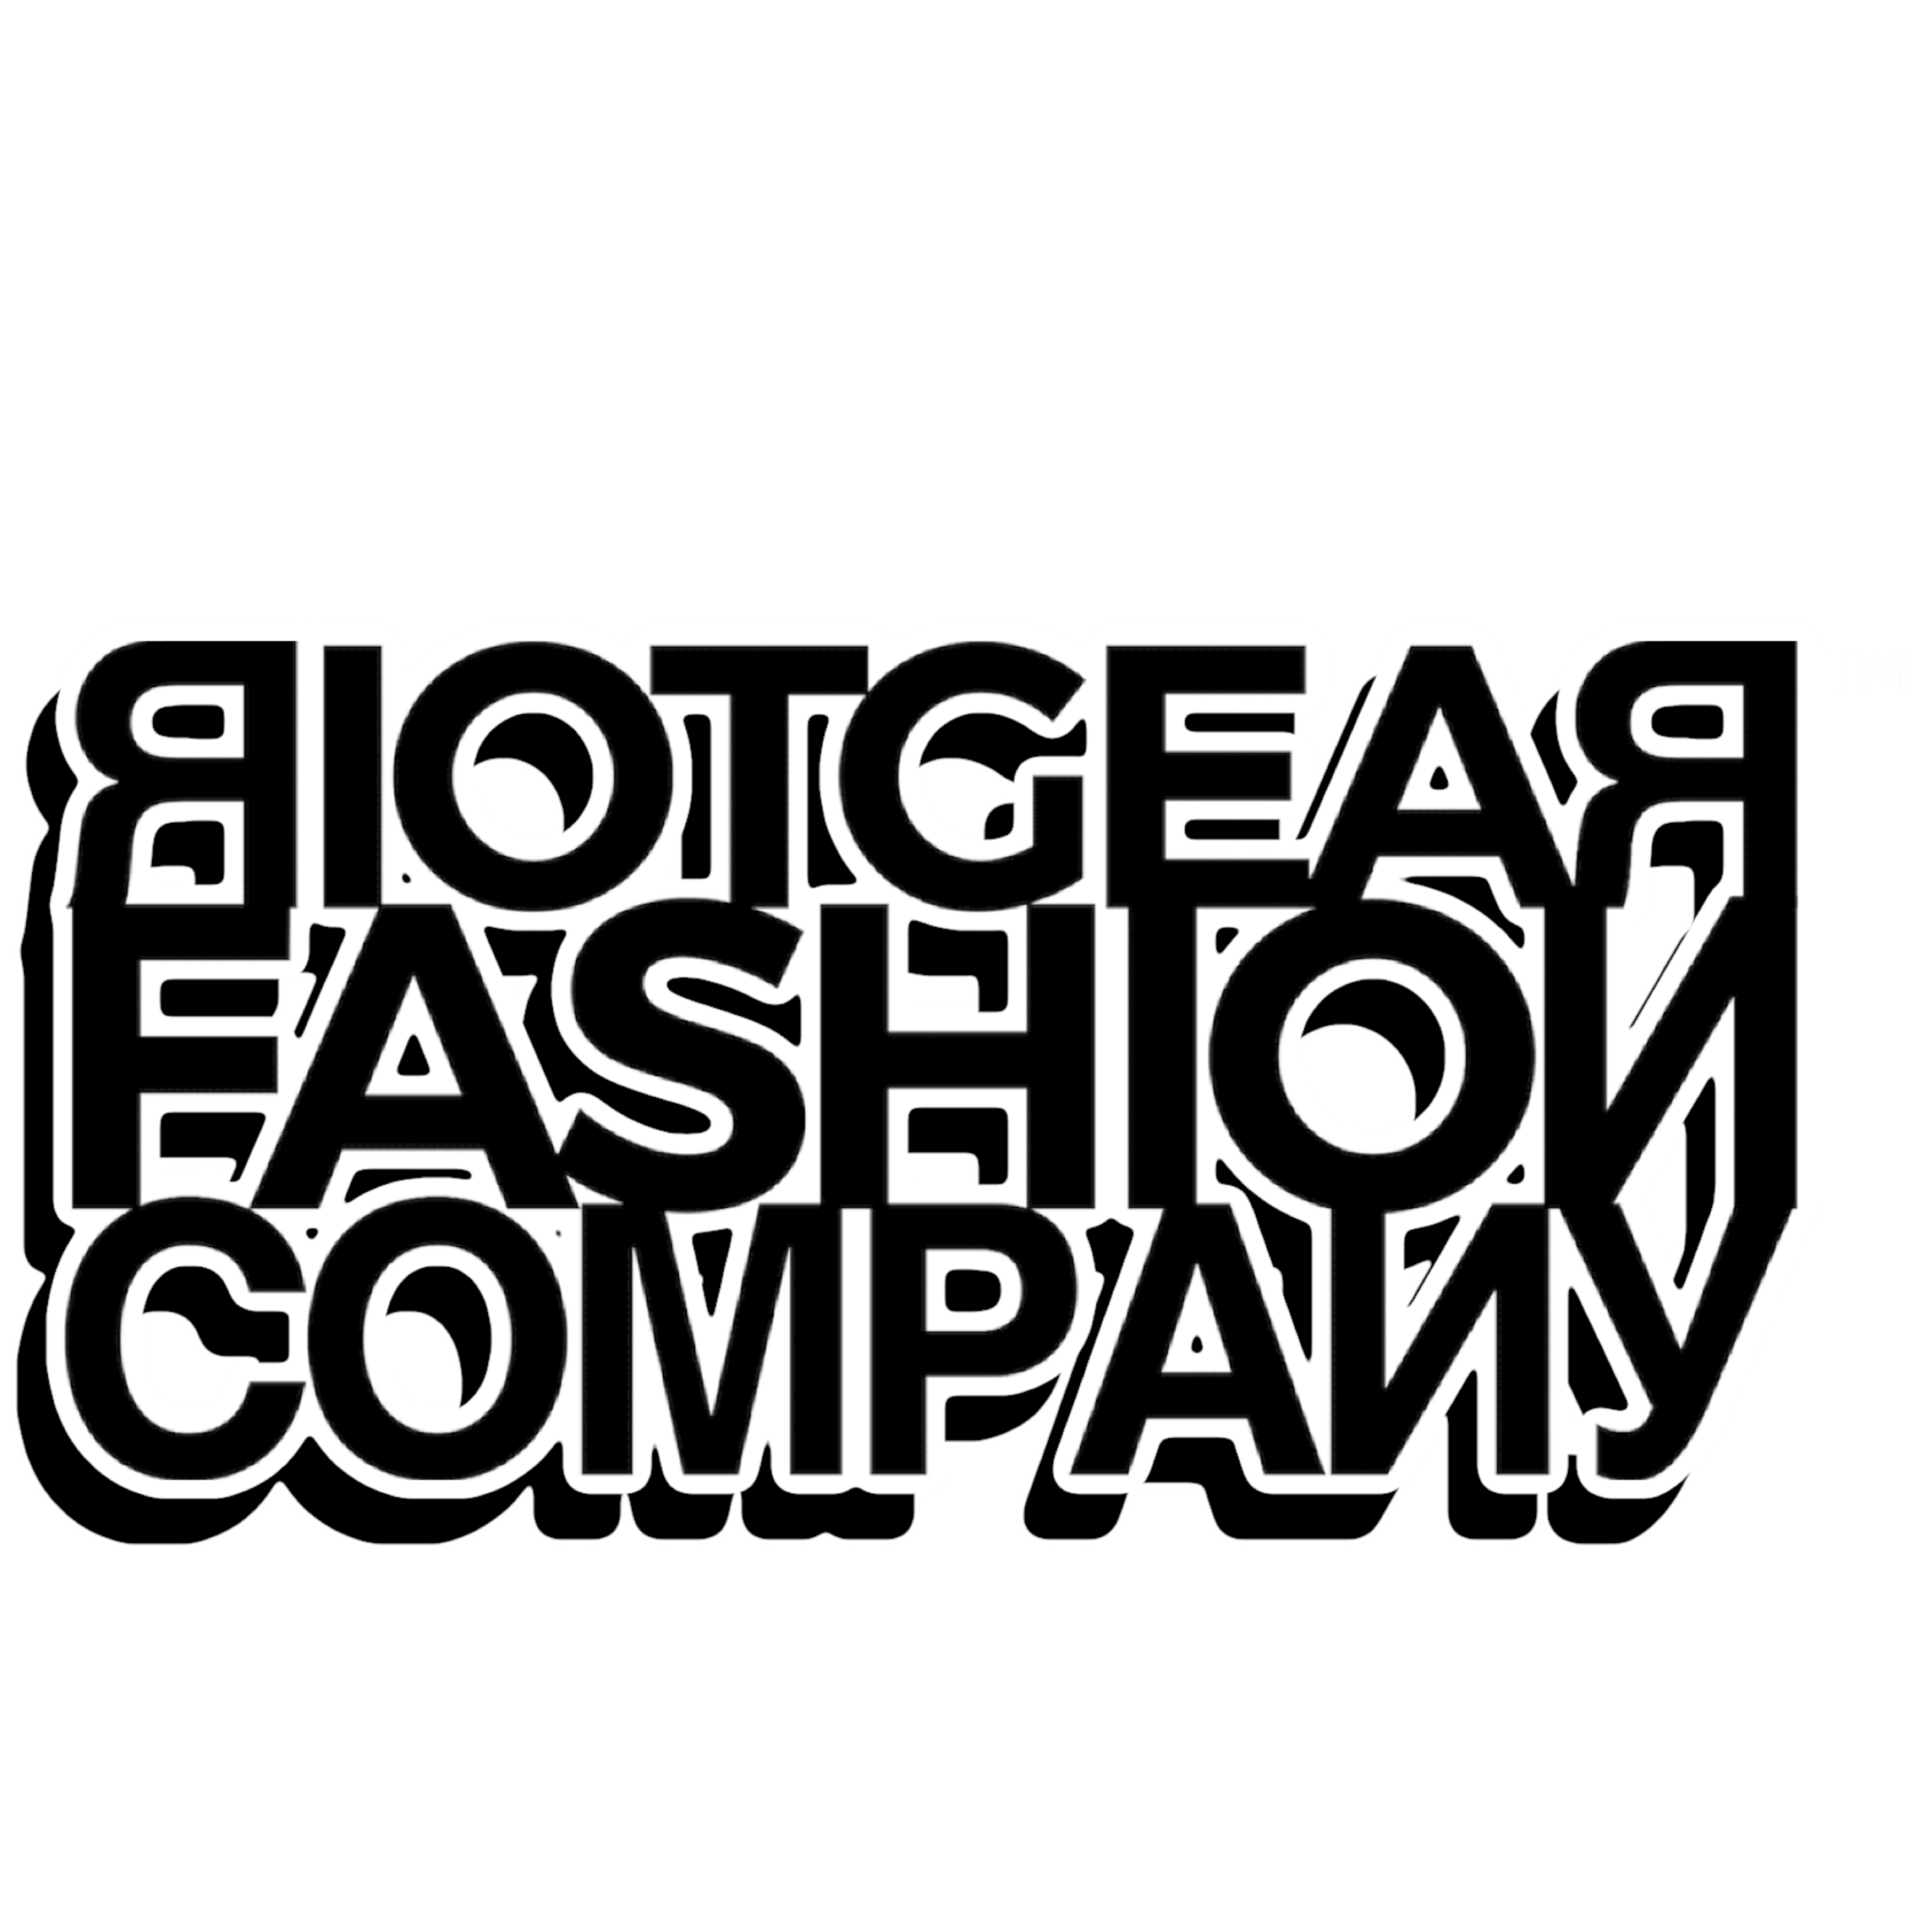 Riotgear Fashion